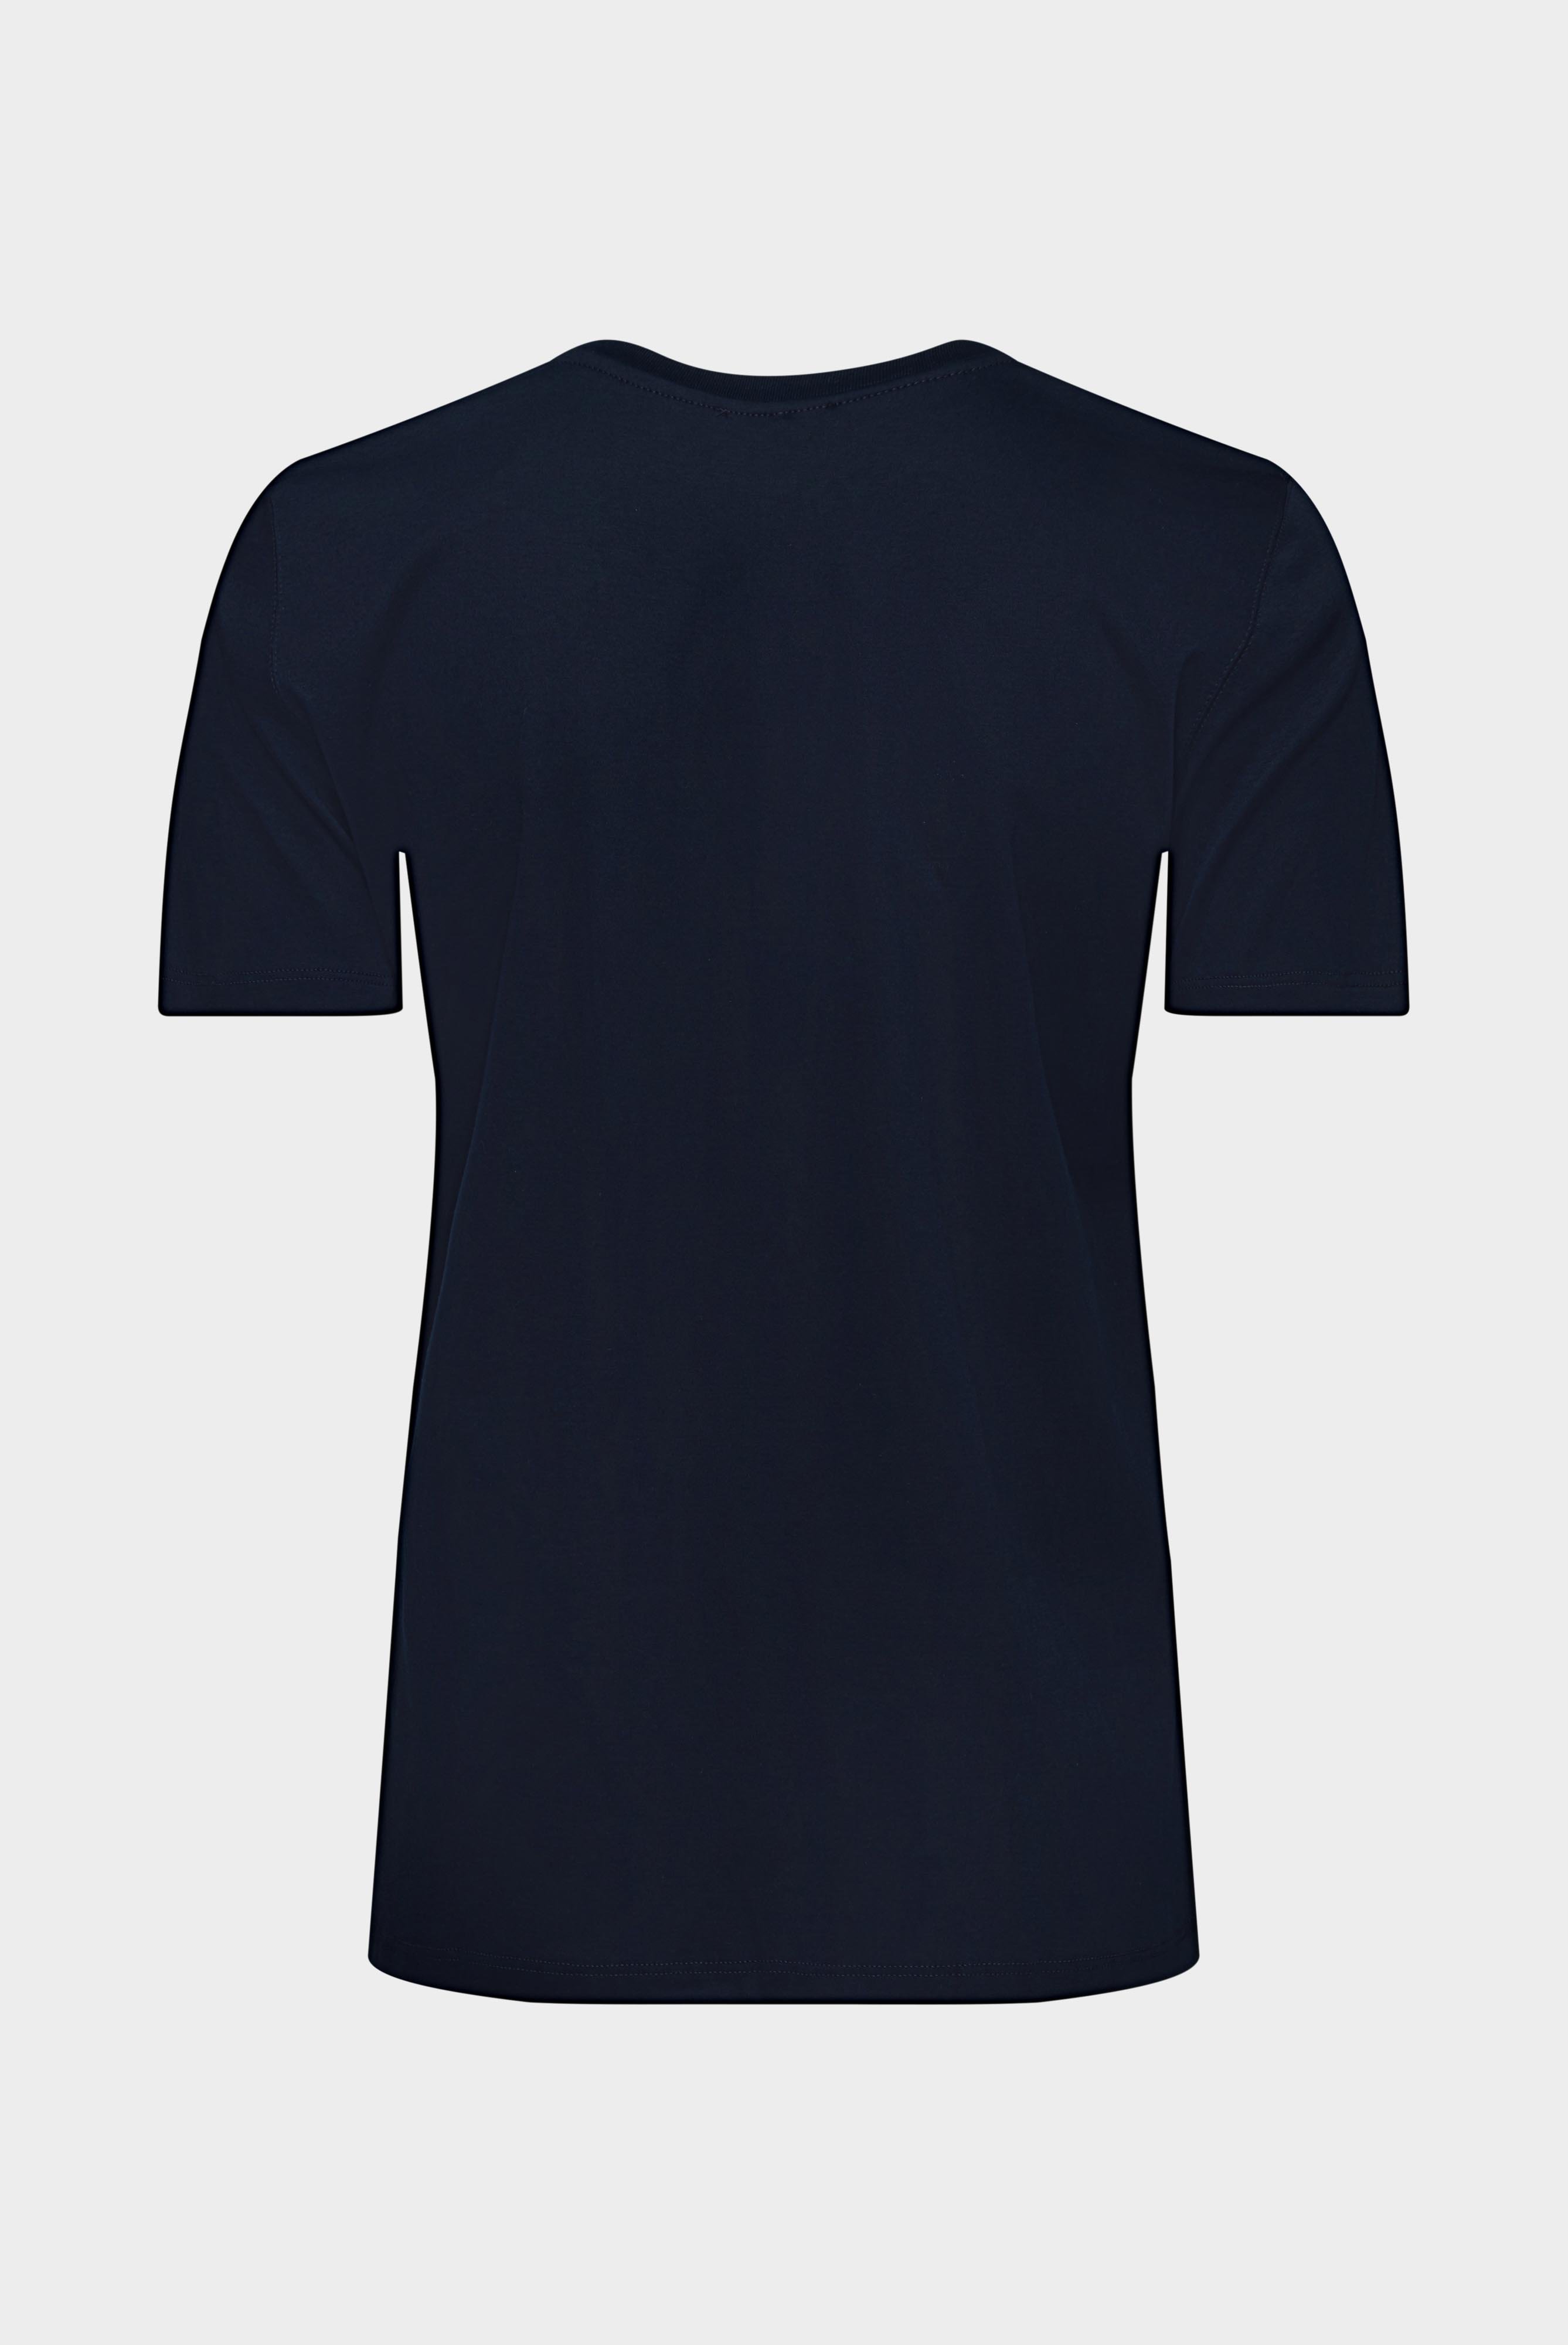 Tops & T-Shirts+Jersey T-Shirt+05.6384.18.180031.790.32